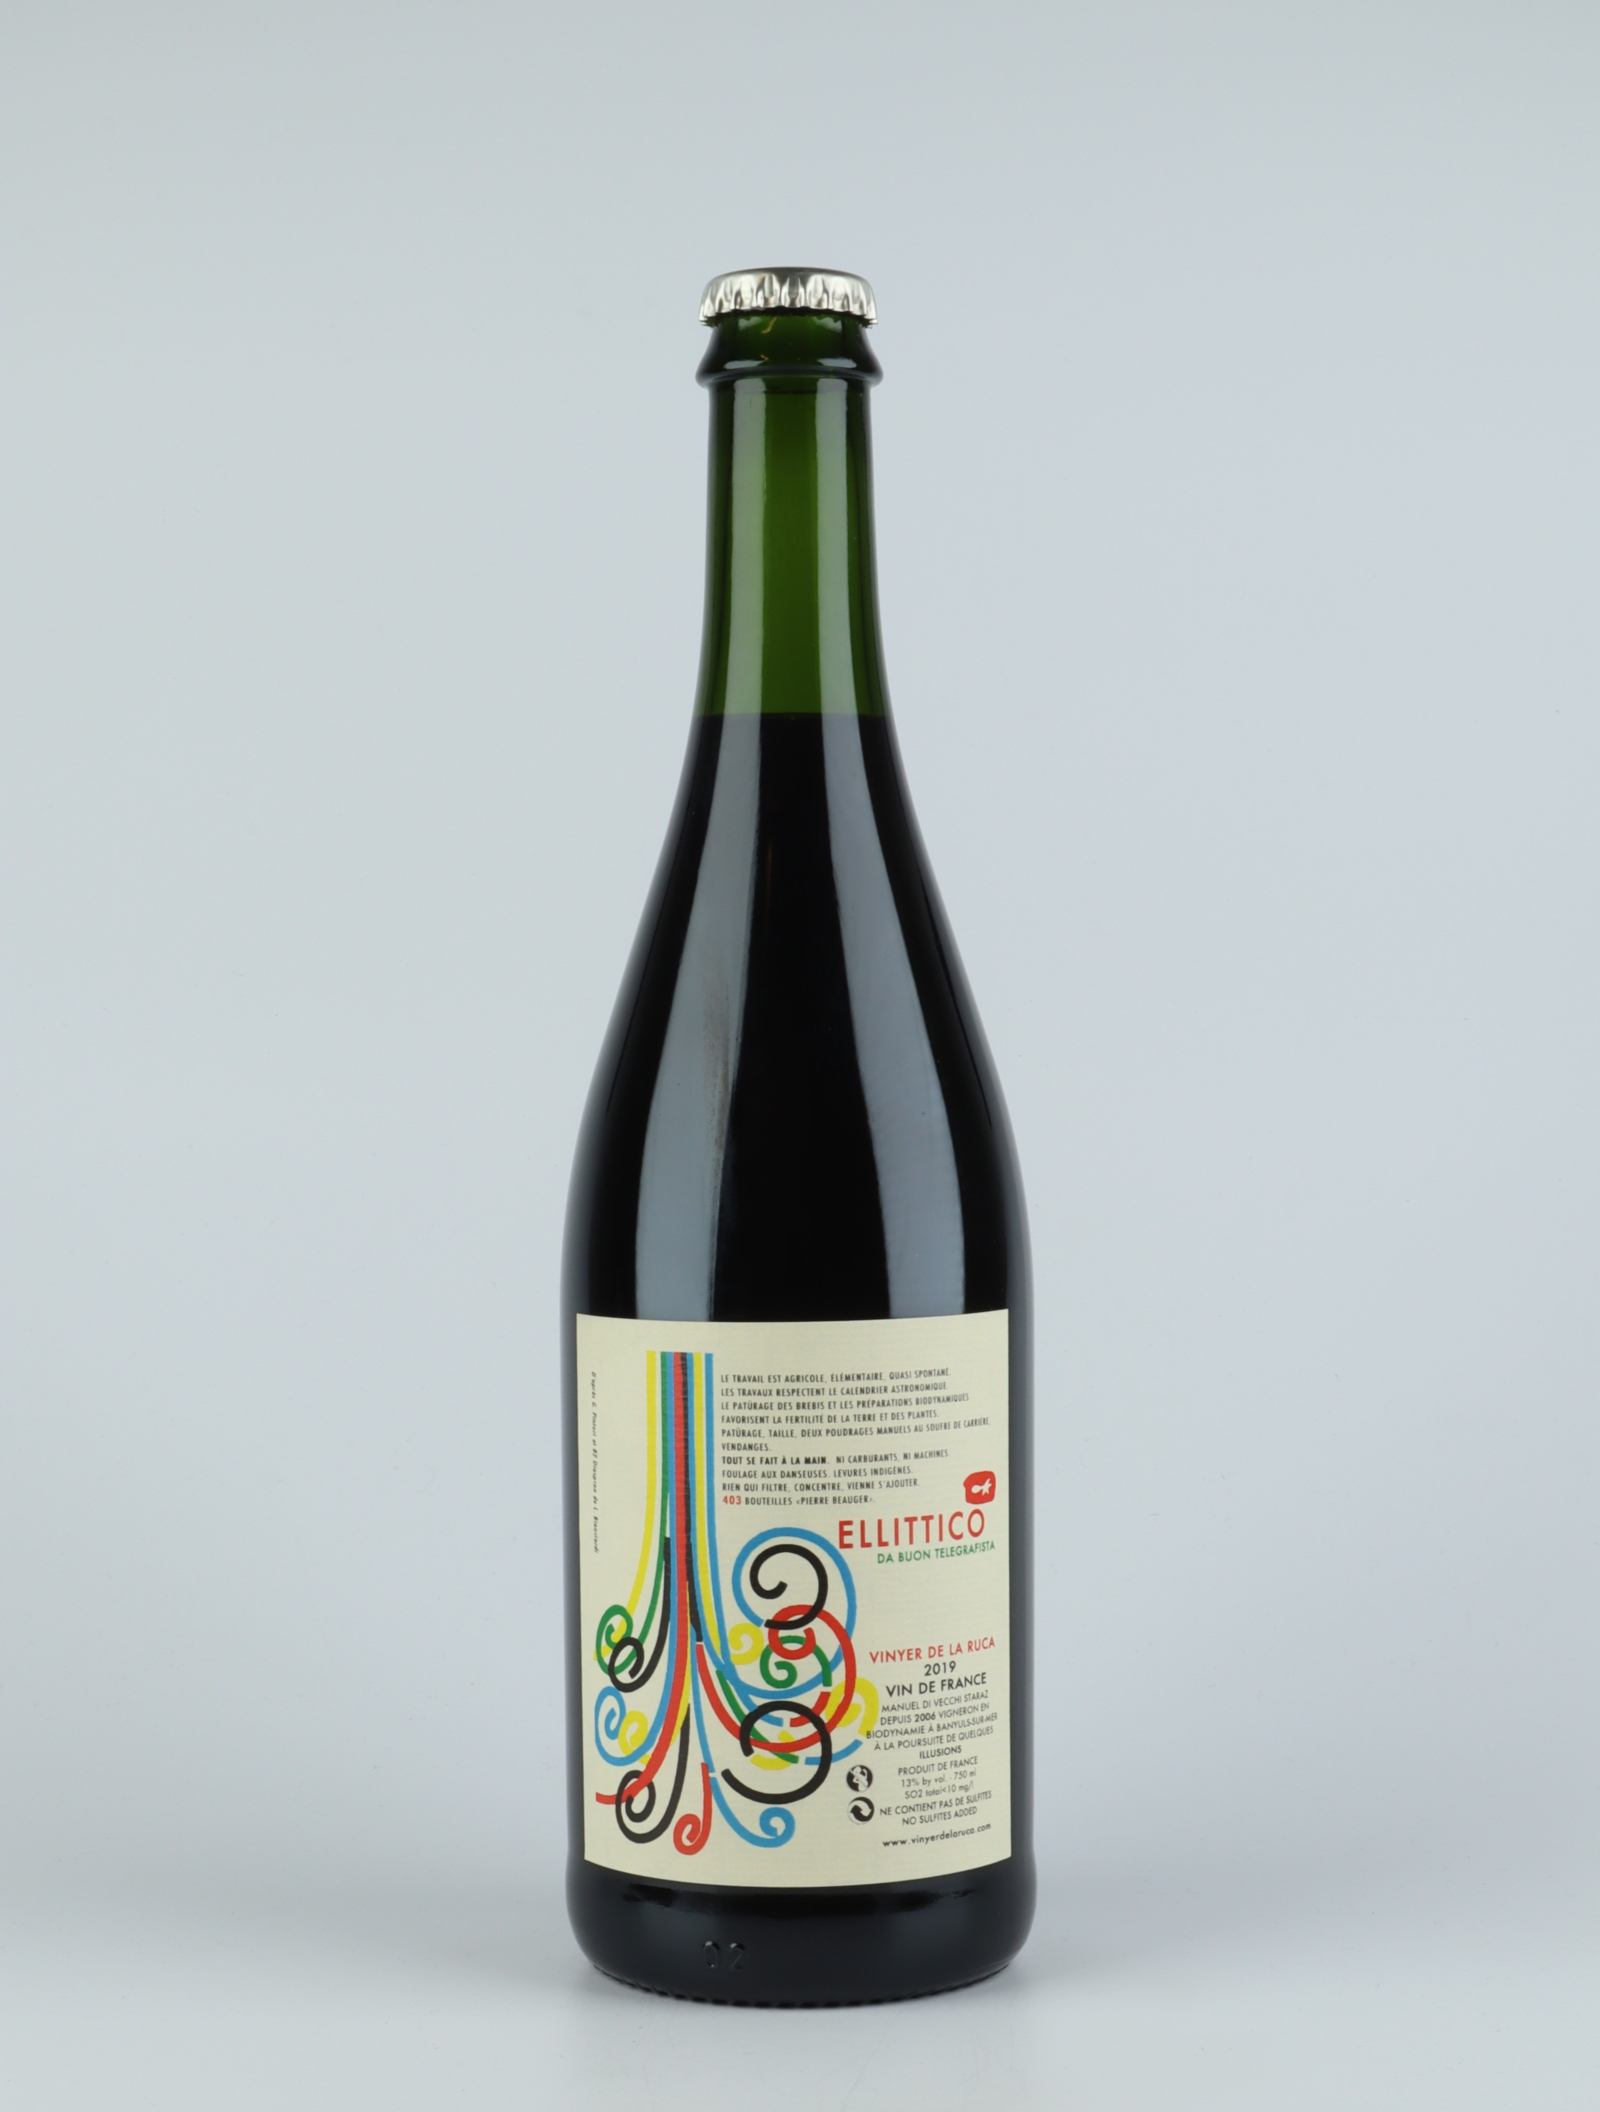 En flaske 2019 Ellittico Rødvin fra Vinyer de la Ruca, Rousillon i Frankrig